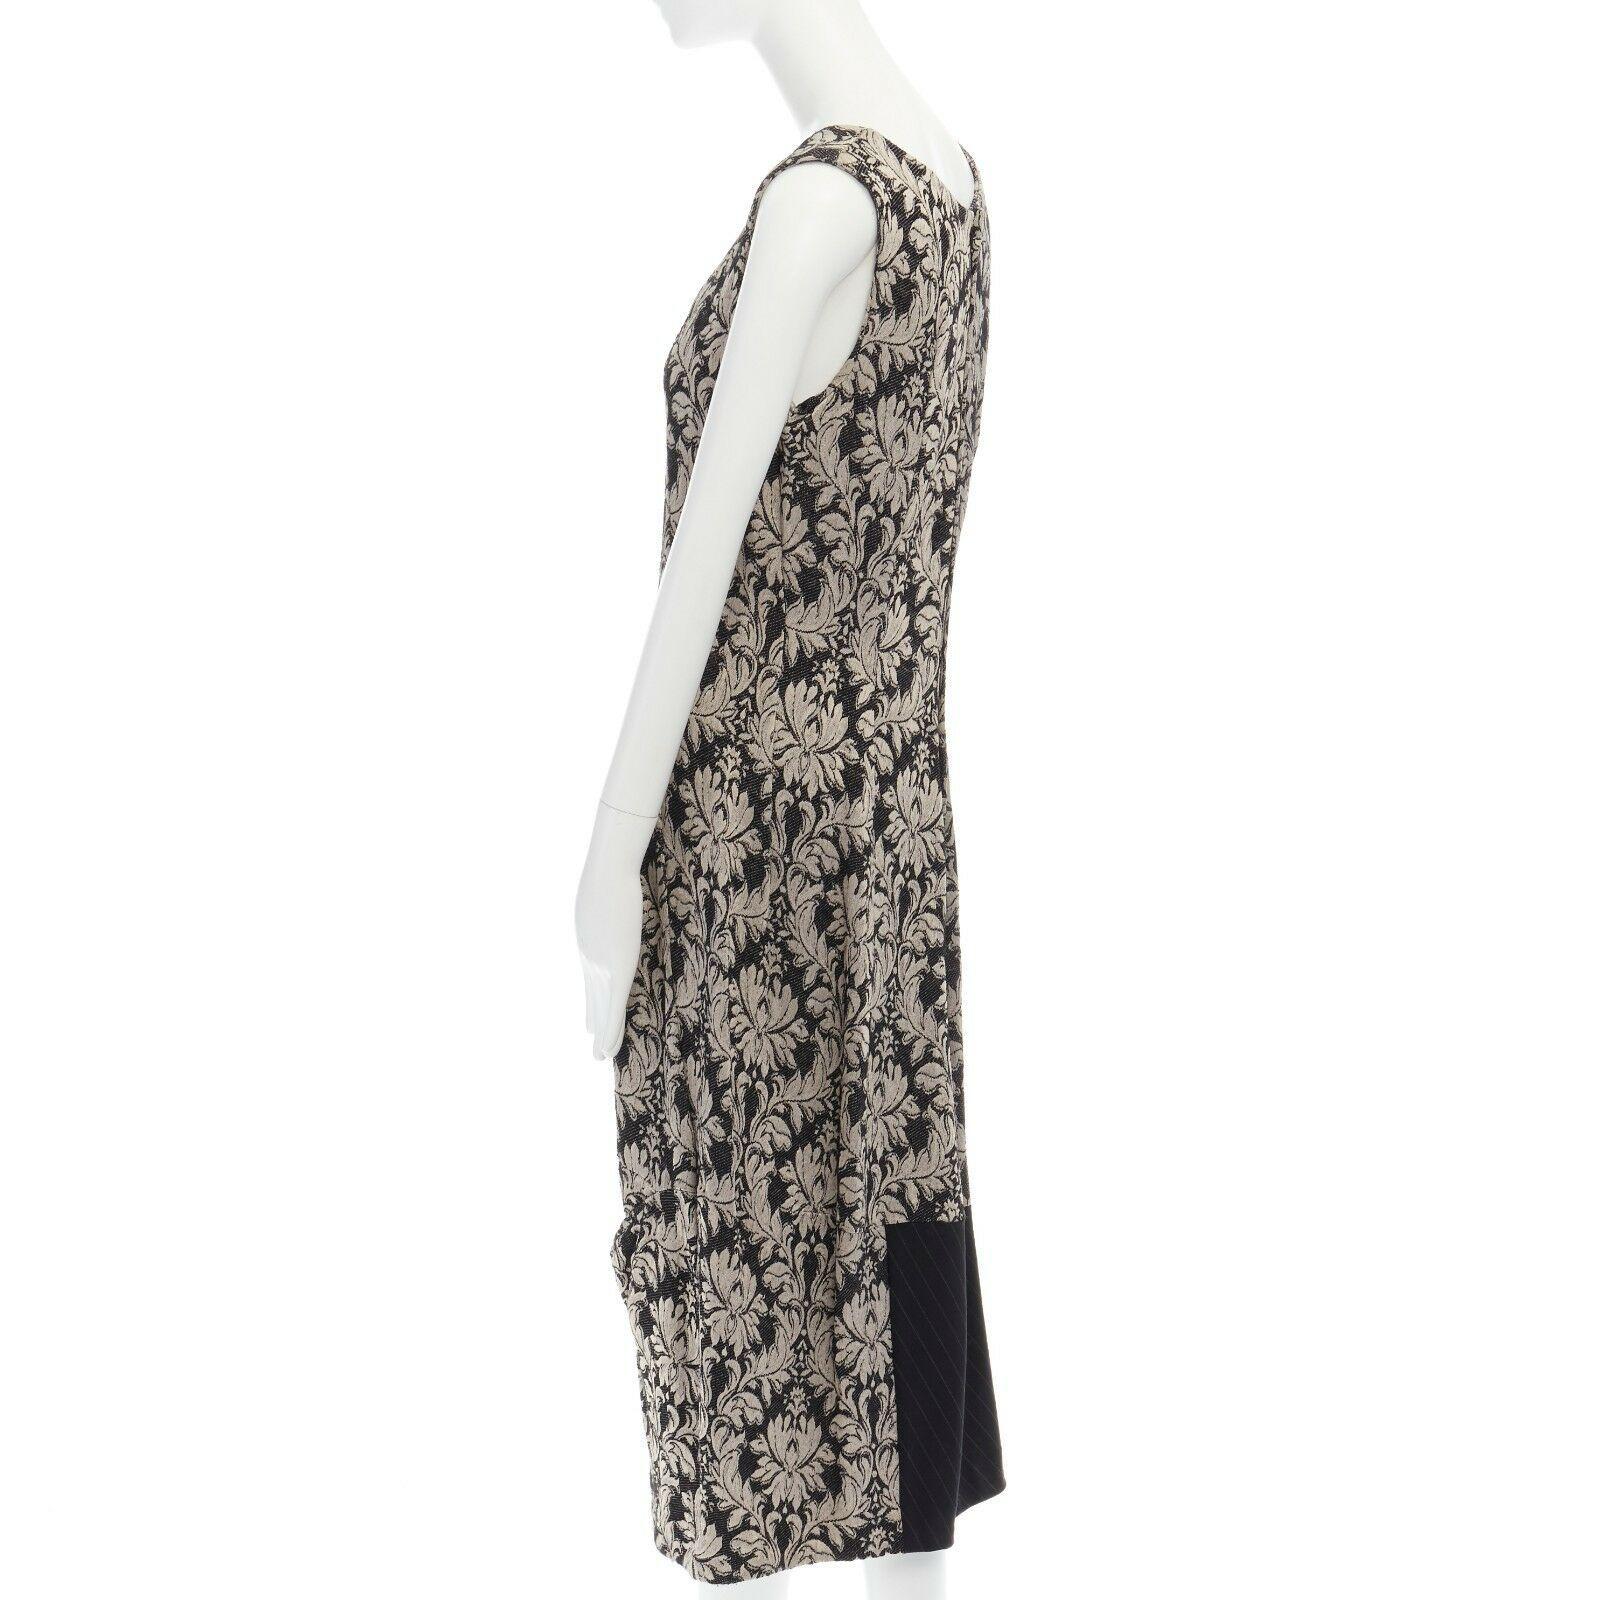 COMME DES GARCONS Vintage SS1993 black baroque floral jacquard pinstripe dress M 3